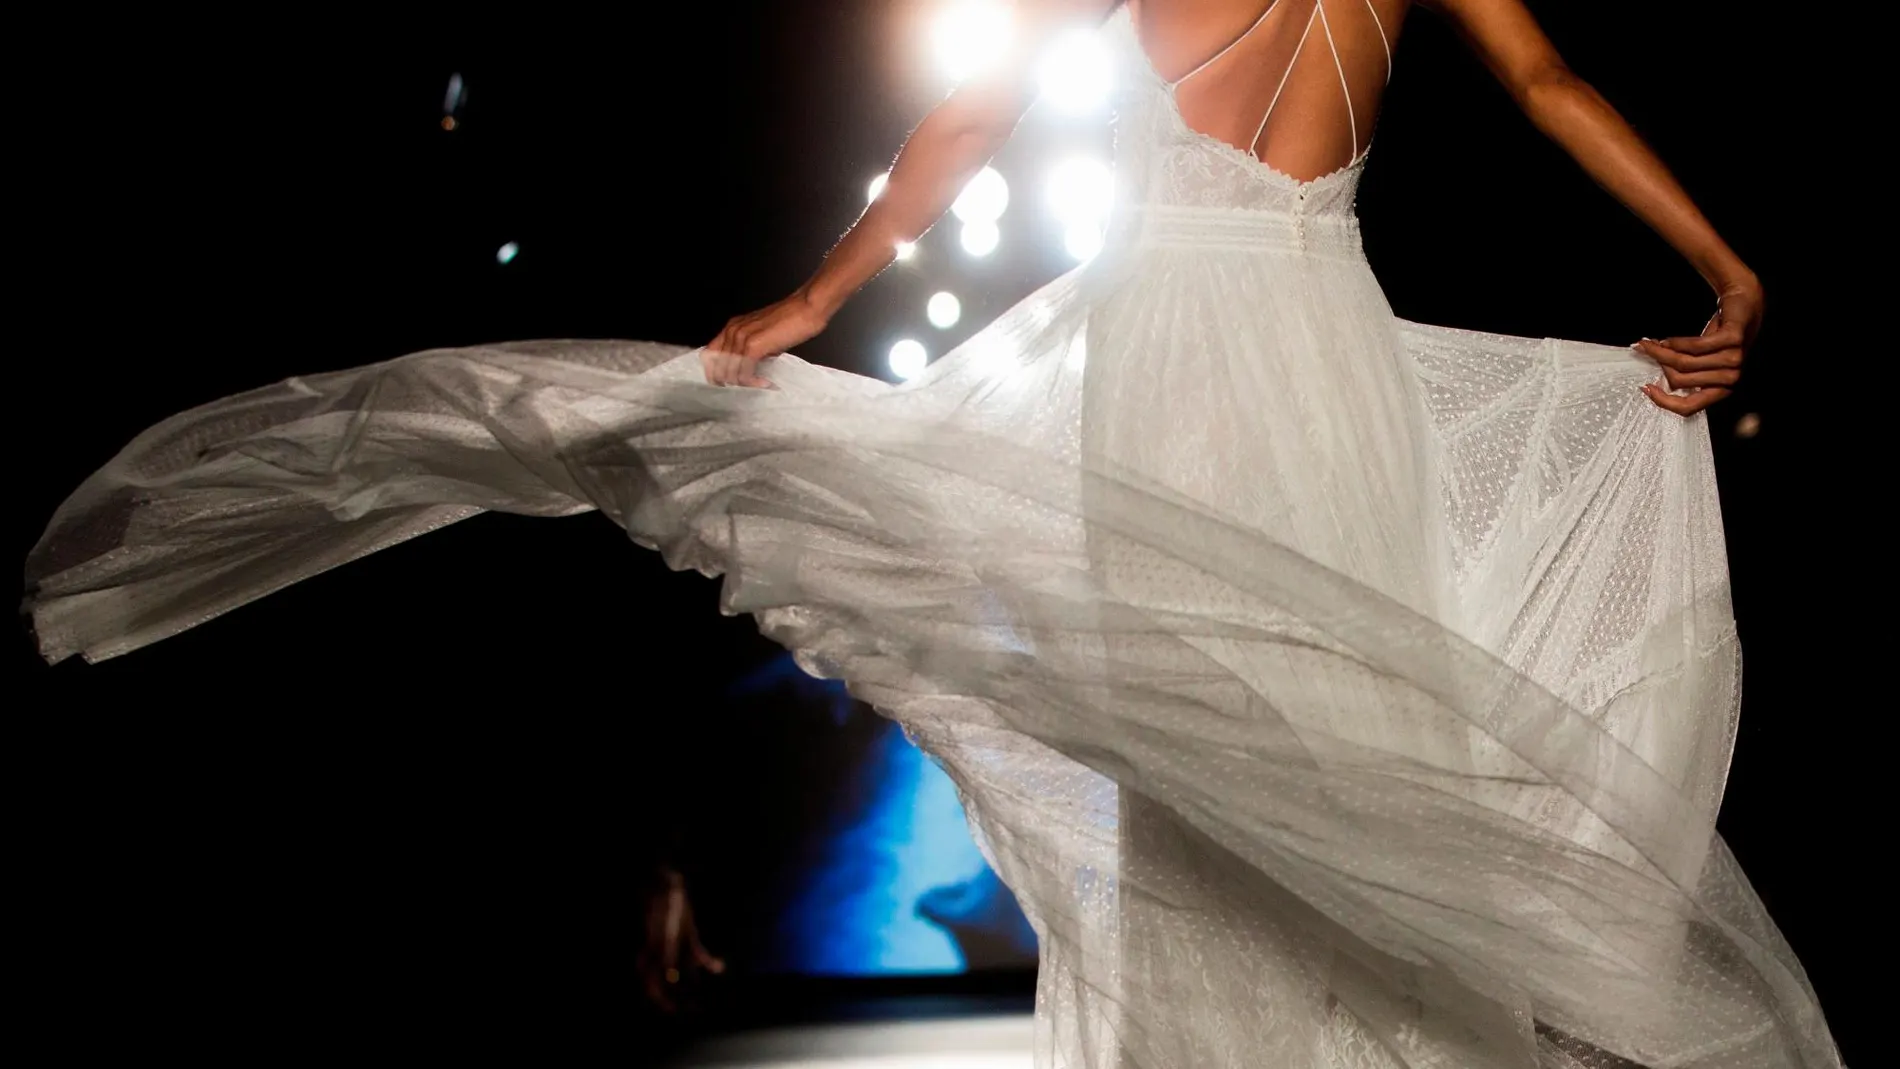 Blanca, radiante y liberada: La revolución femenina llega a la Valmont Barcelona Bridal Fashion Week